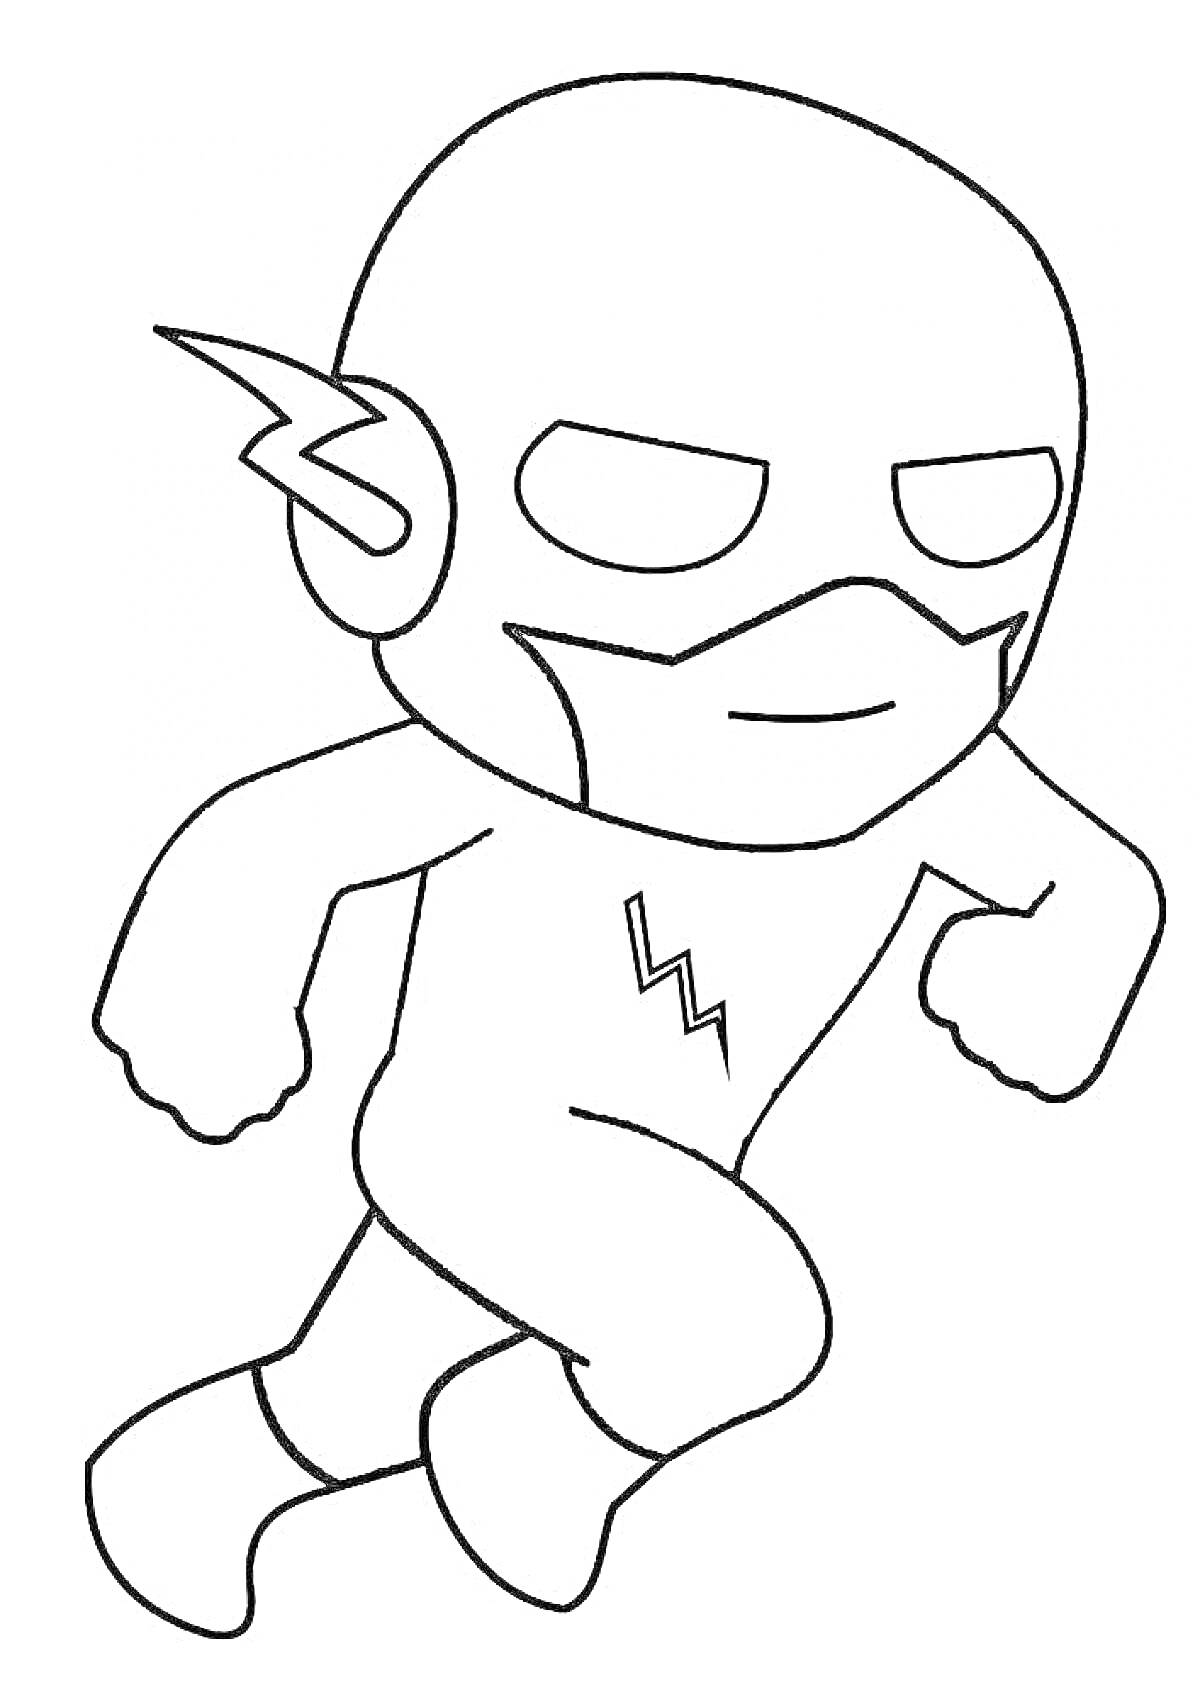 Раскраска Супергерой Бегущего Флеша в простом стиле, маска с молнией, костюм с молнией на груди